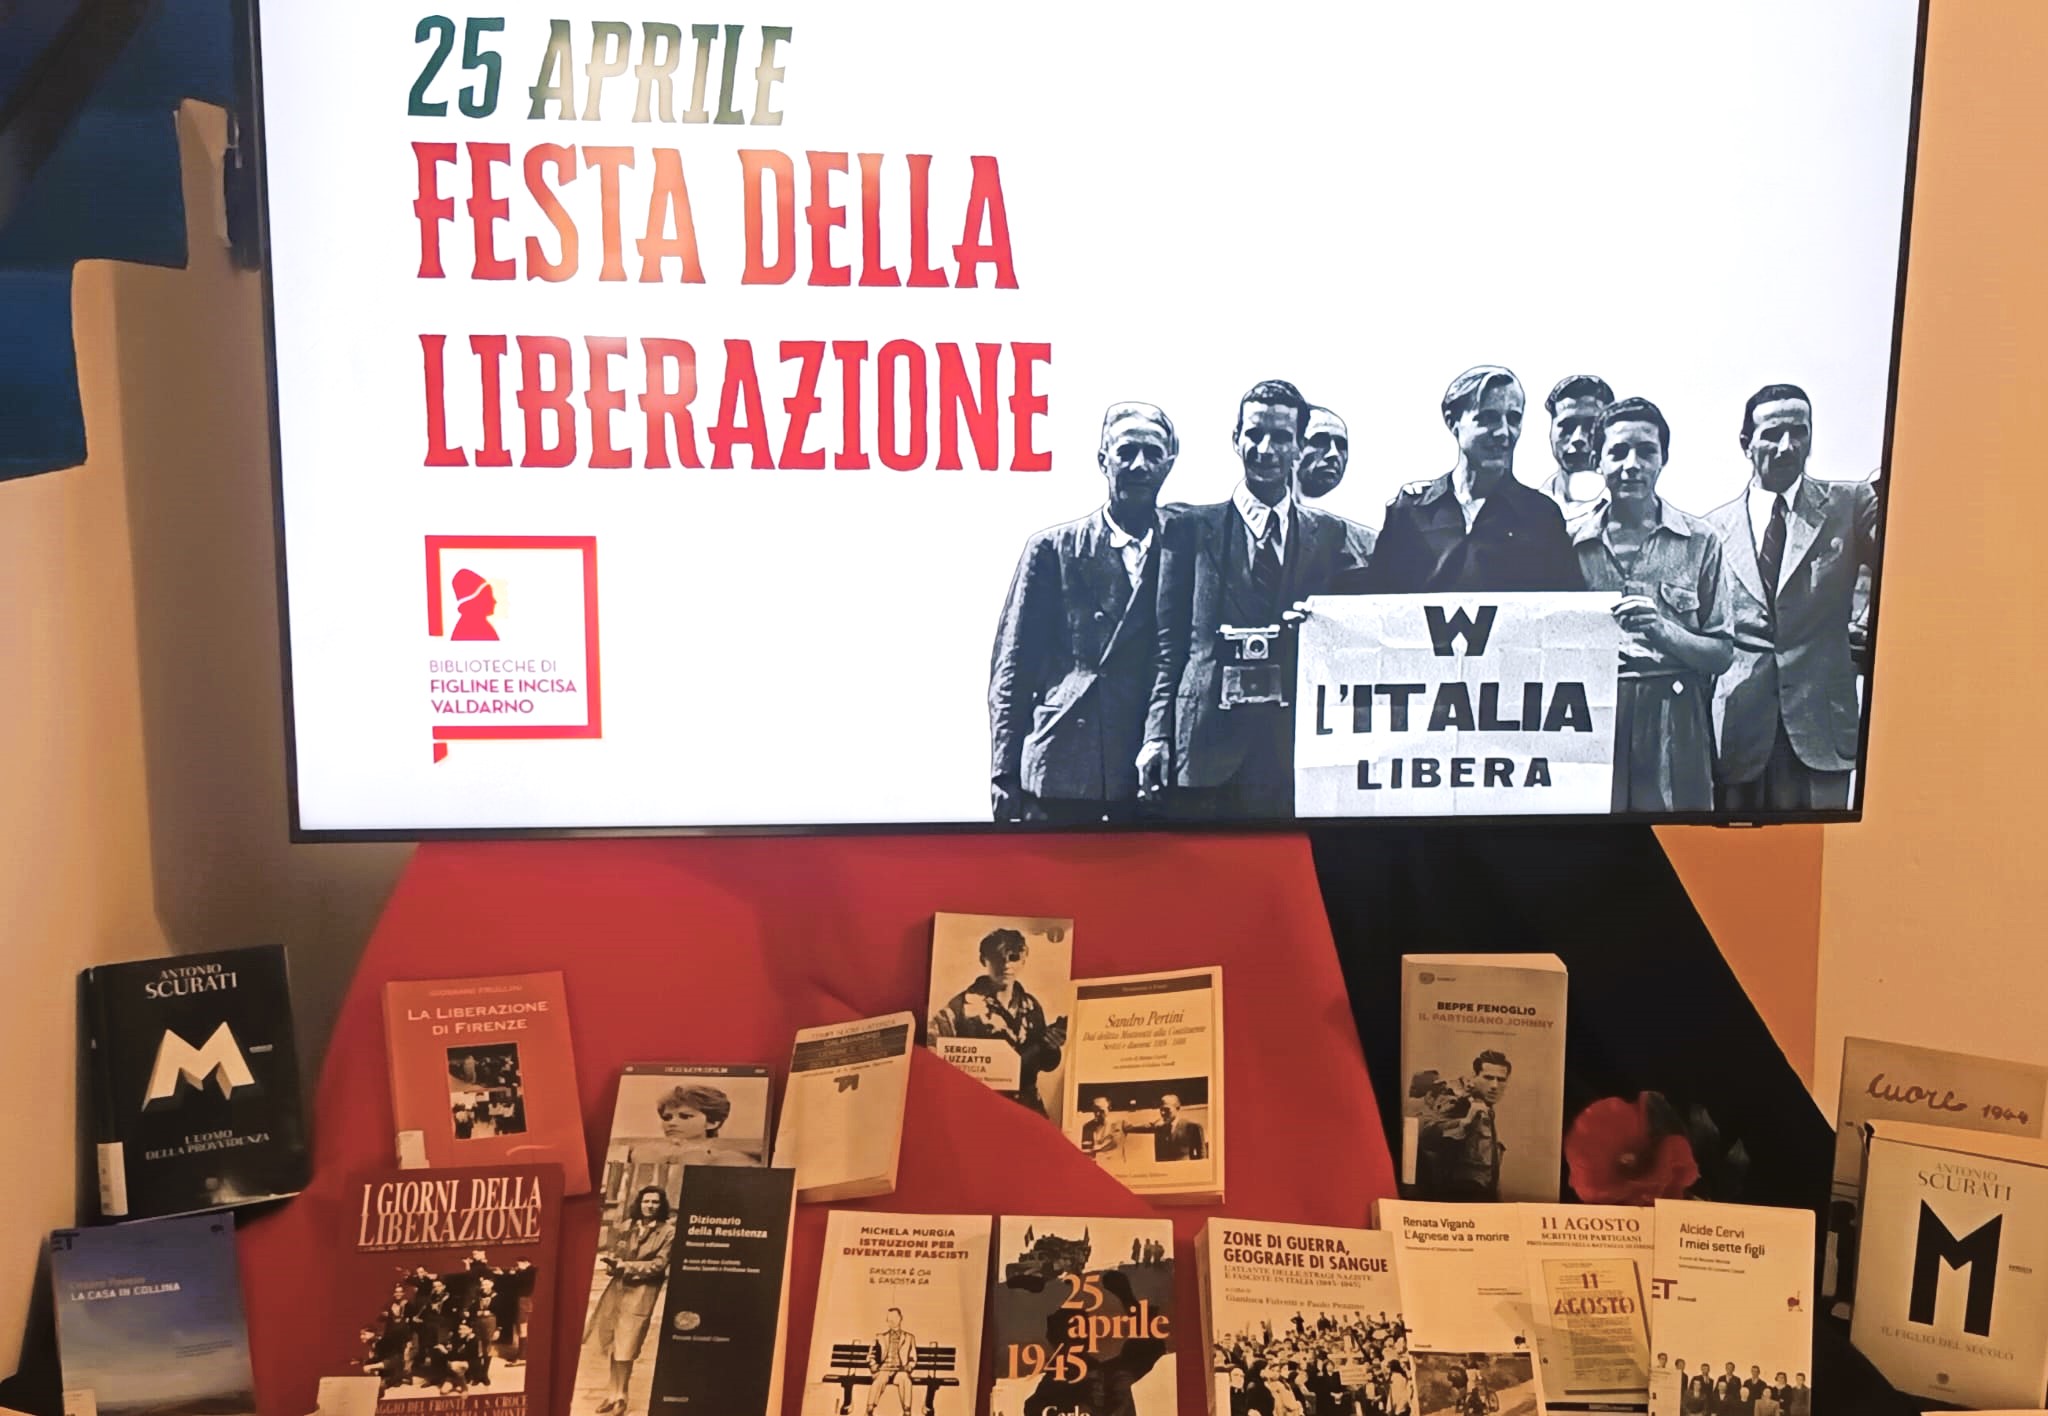 25 aprile alla Biblioteca "Marsilio Ficino" Scaffale tematico (Fonte foto Comune di Figline e Incisa Valdarno))